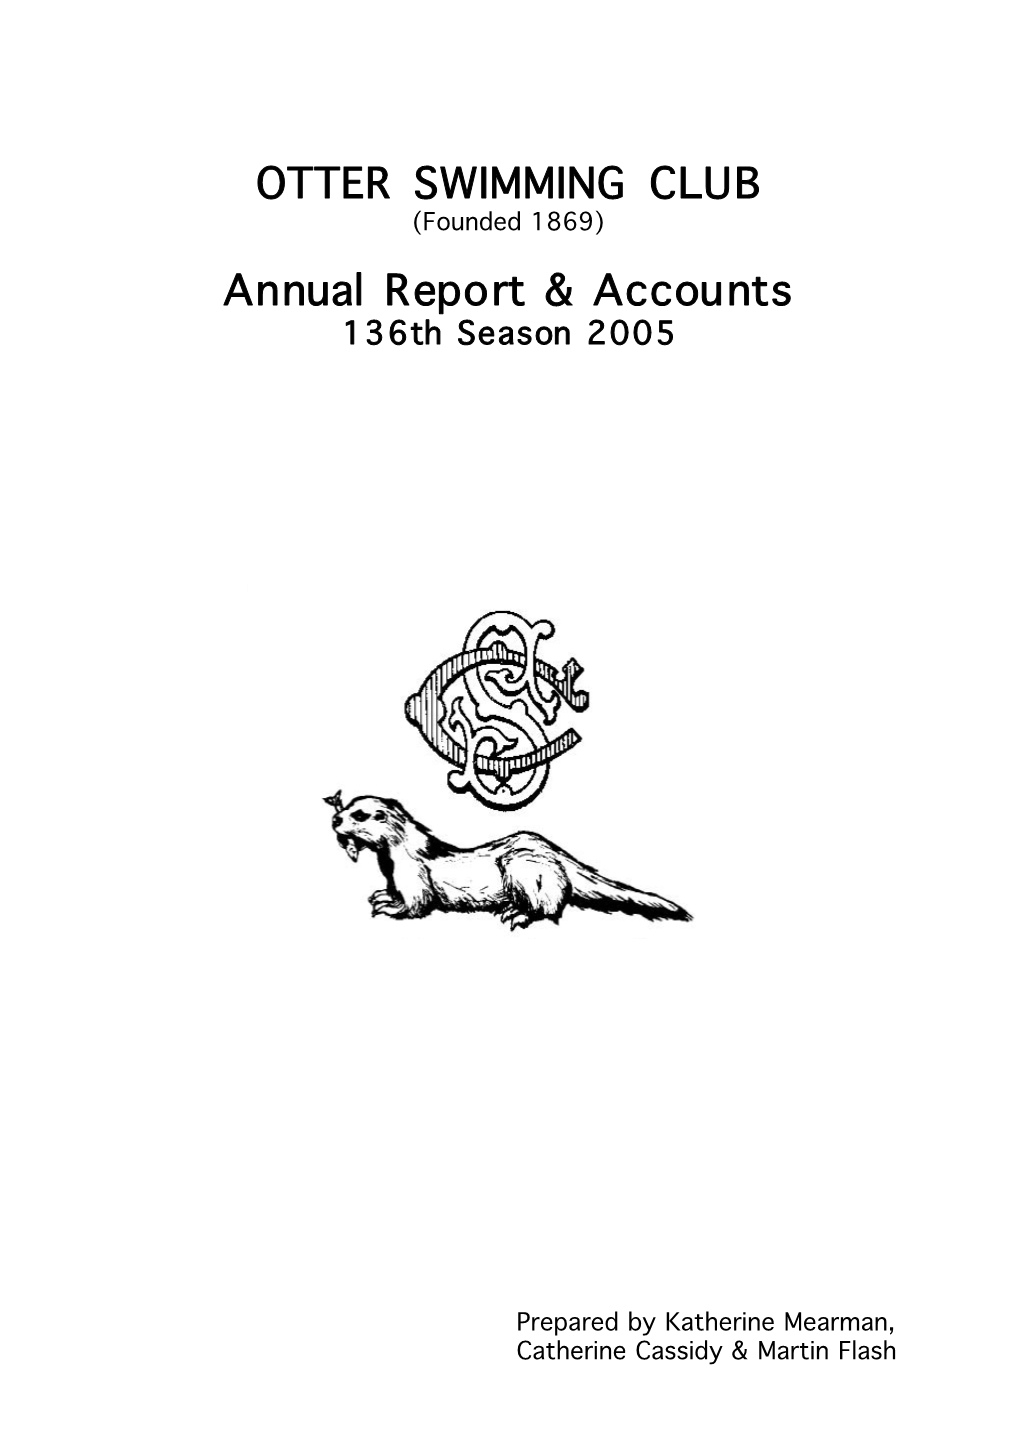 Otter-Annual-Report-2005.Pdf